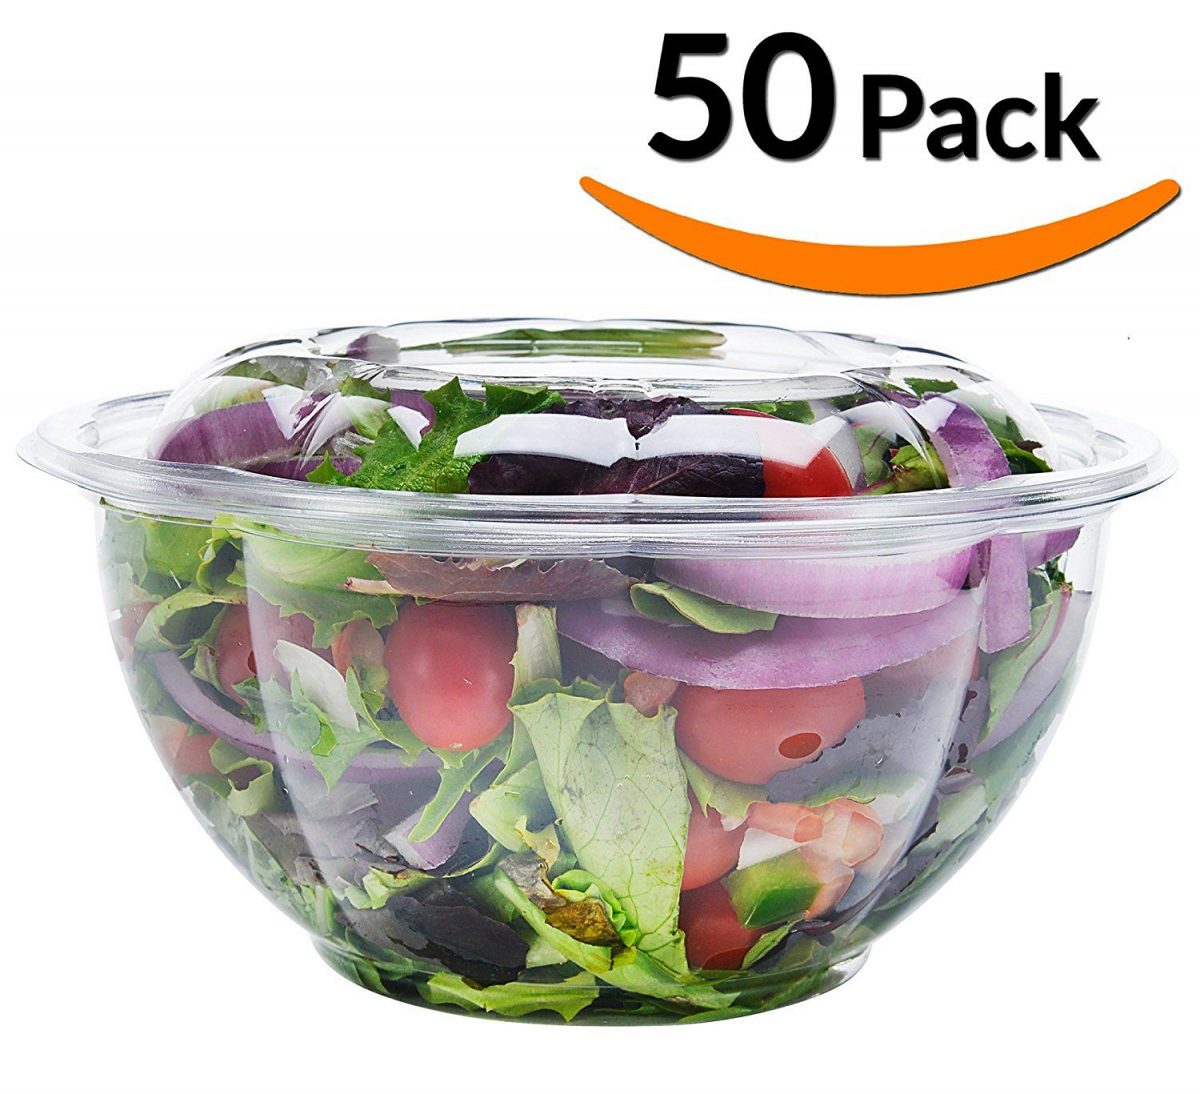 Amazon.com: DOBI Salad To